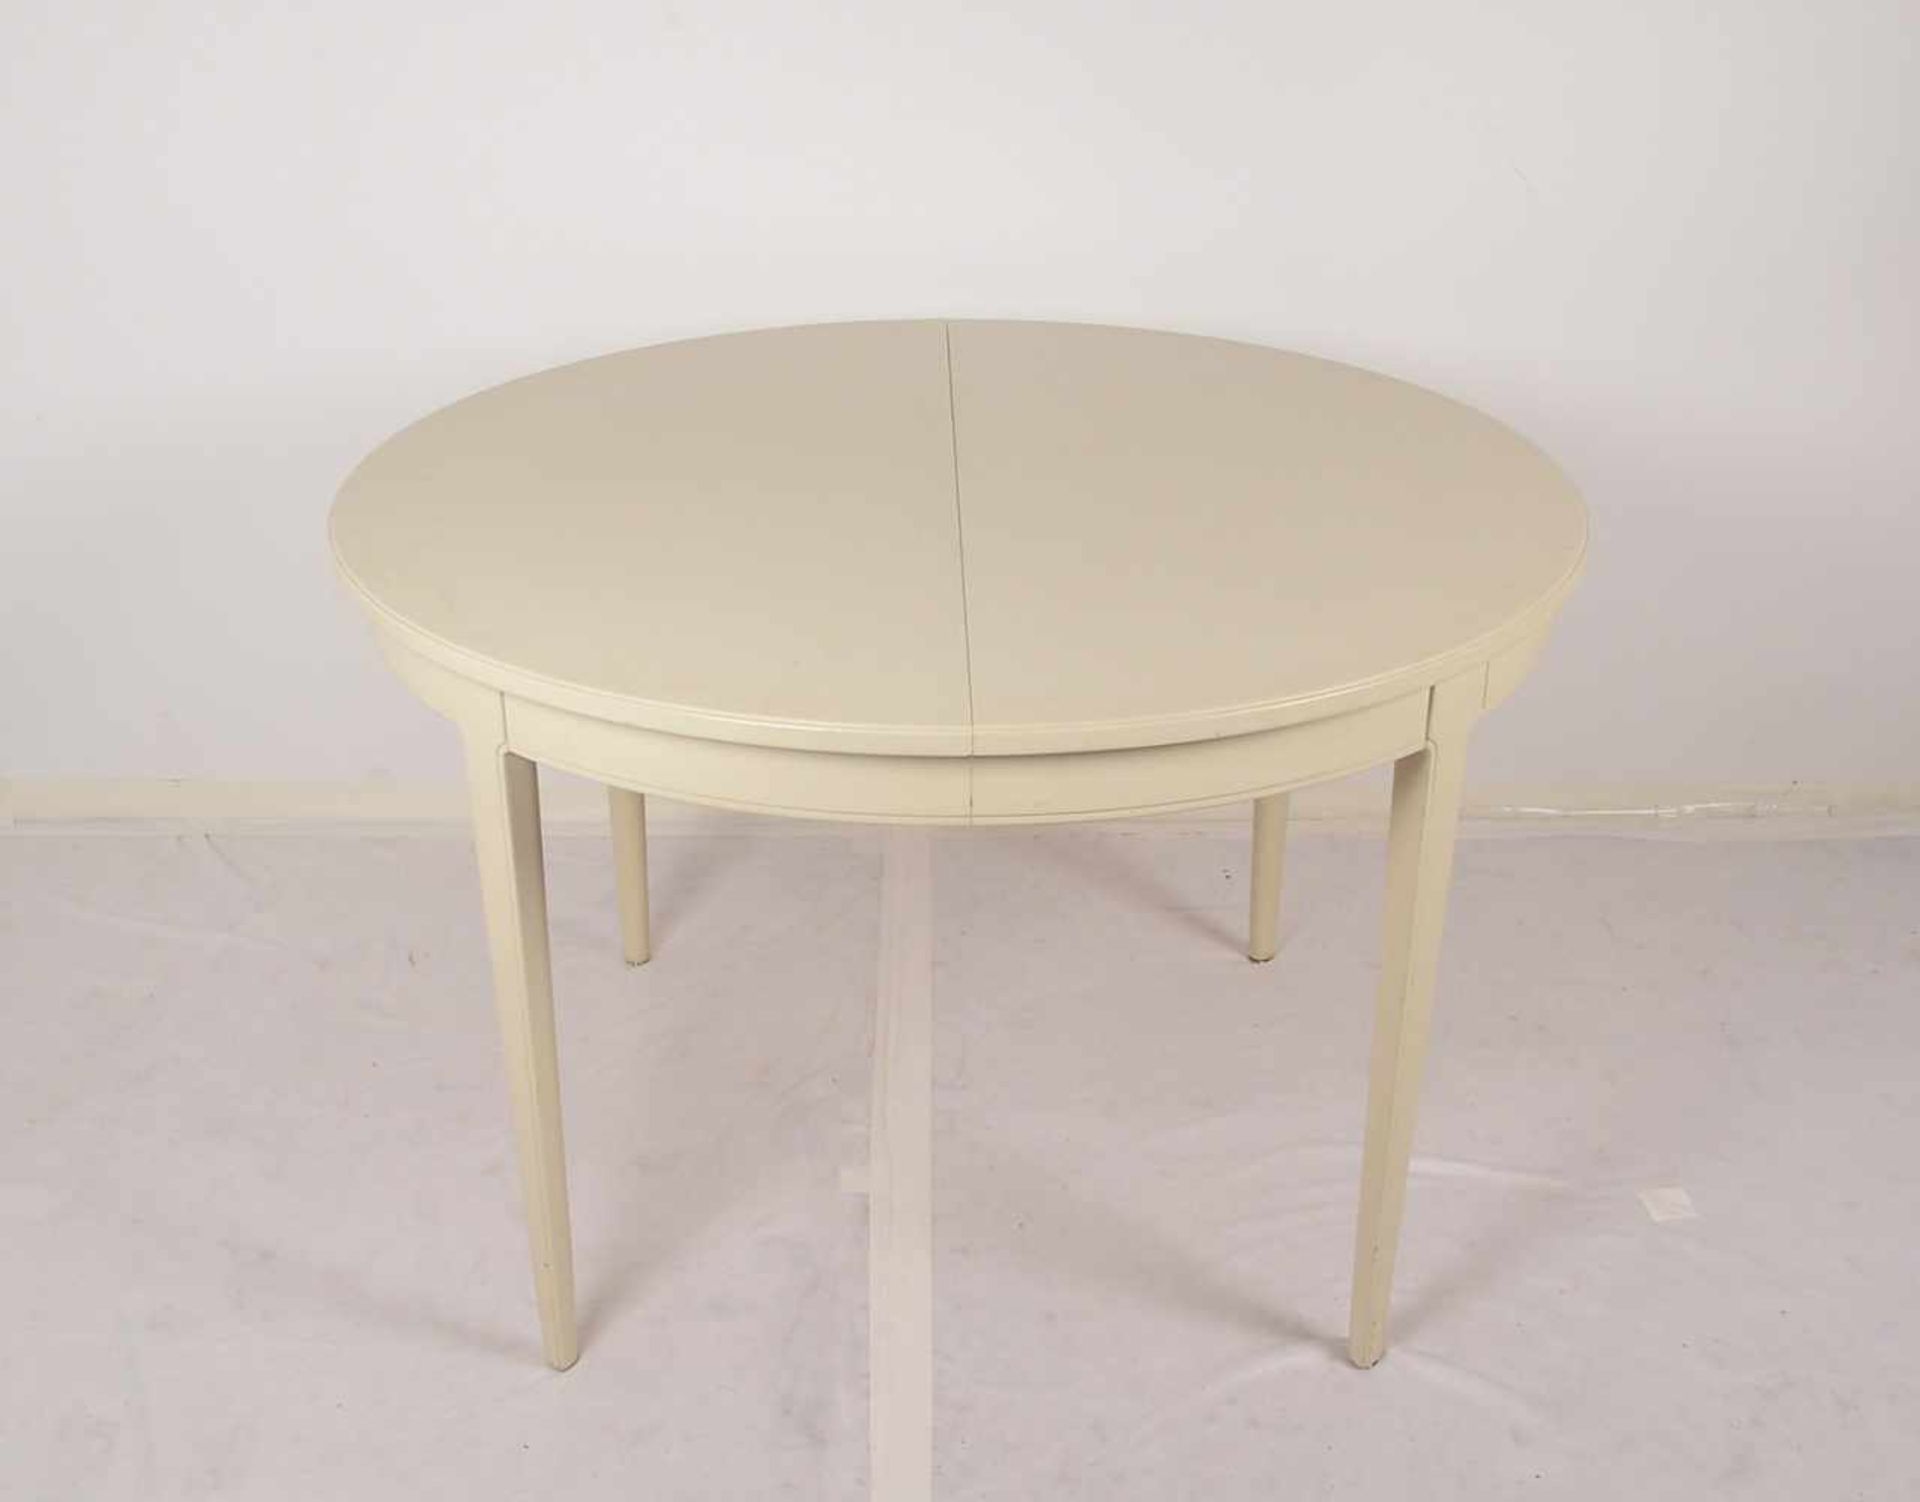 Bodafors/Schweden, Tisch, runde Form, creme-weiß gefasst, Entwurf: Carl Malmsten, ausziehbar - - Bild 2 aus 3